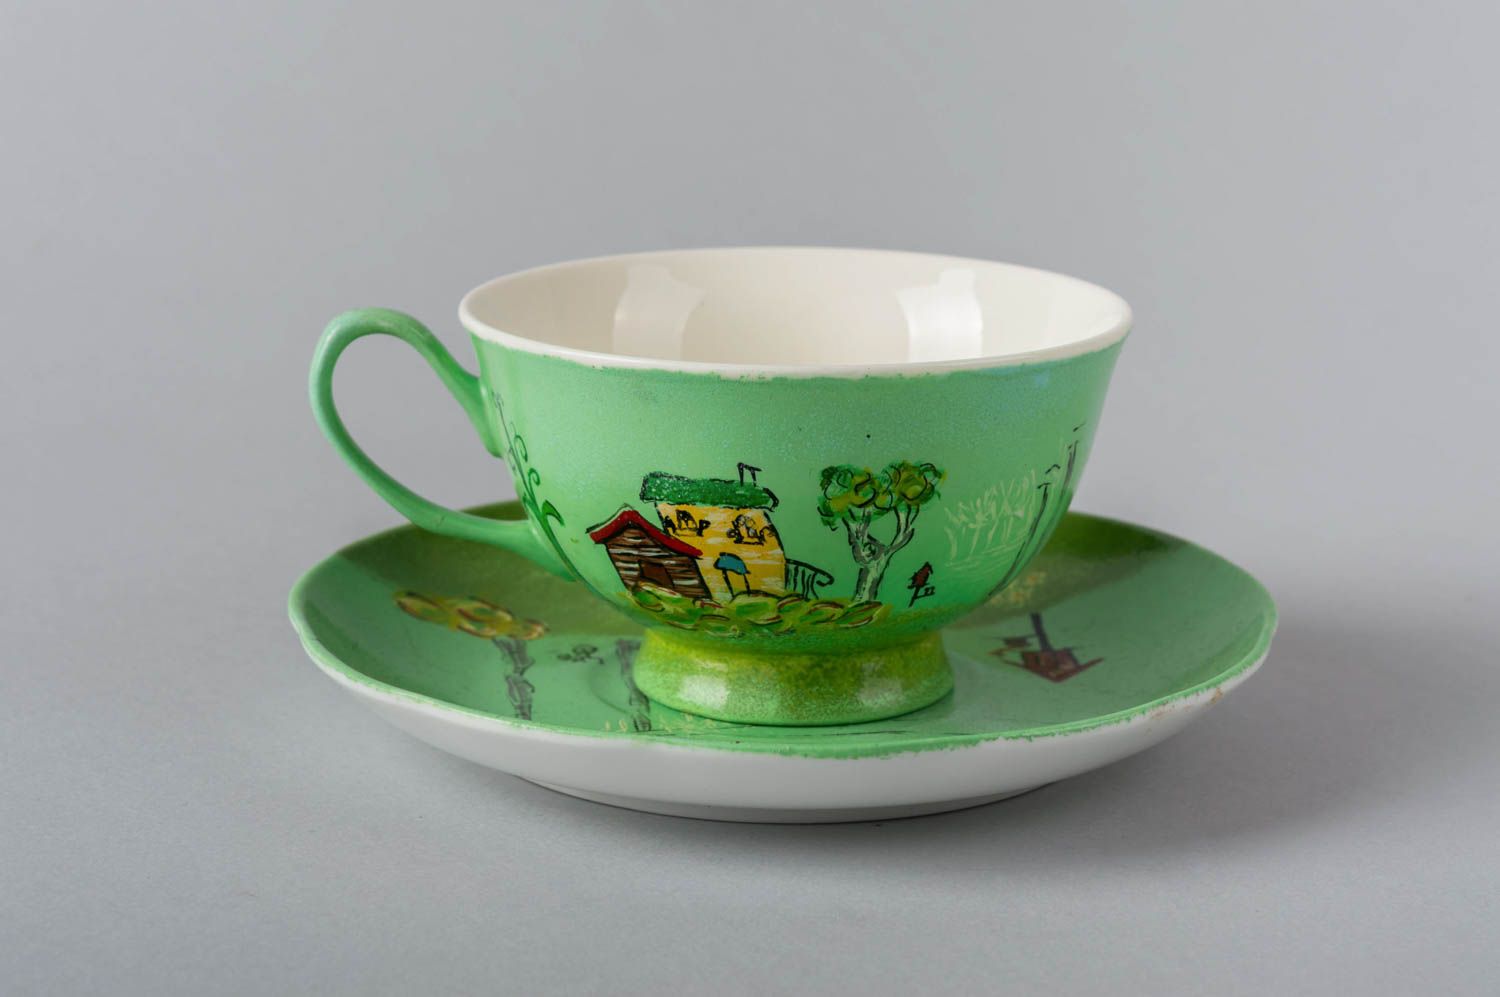 Handmade Tasse mit Untertasse Keramik Geschirr künstlerische schöne Tasse grün foto 2